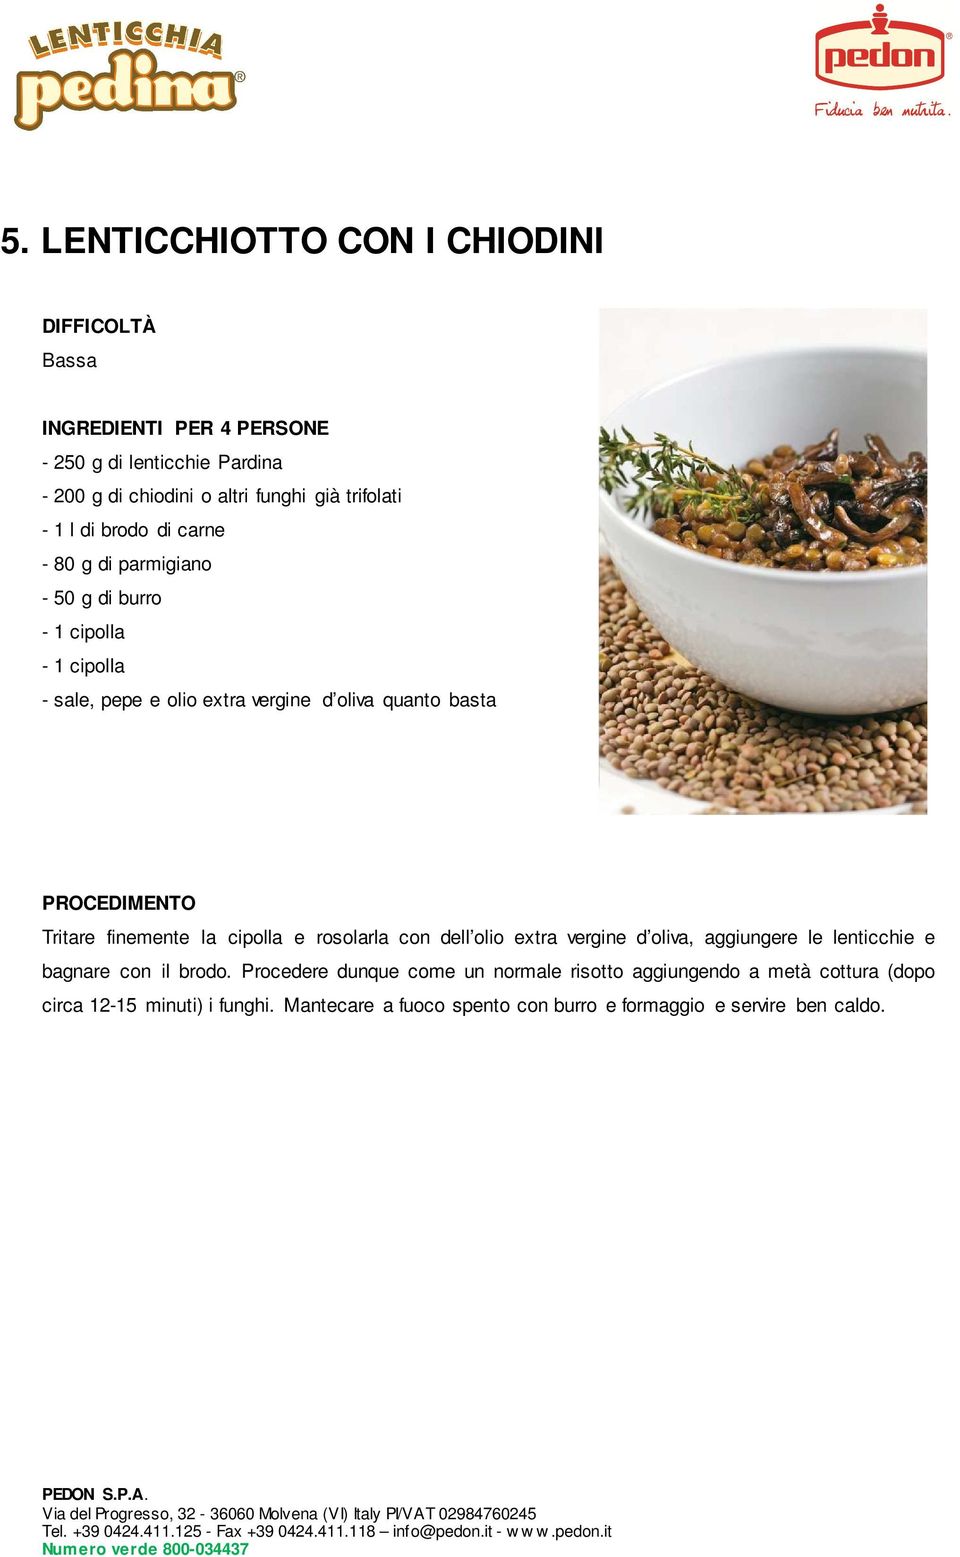 extra vergine d oliva, aggiungere le lenticchie e bagnare con il brodo.